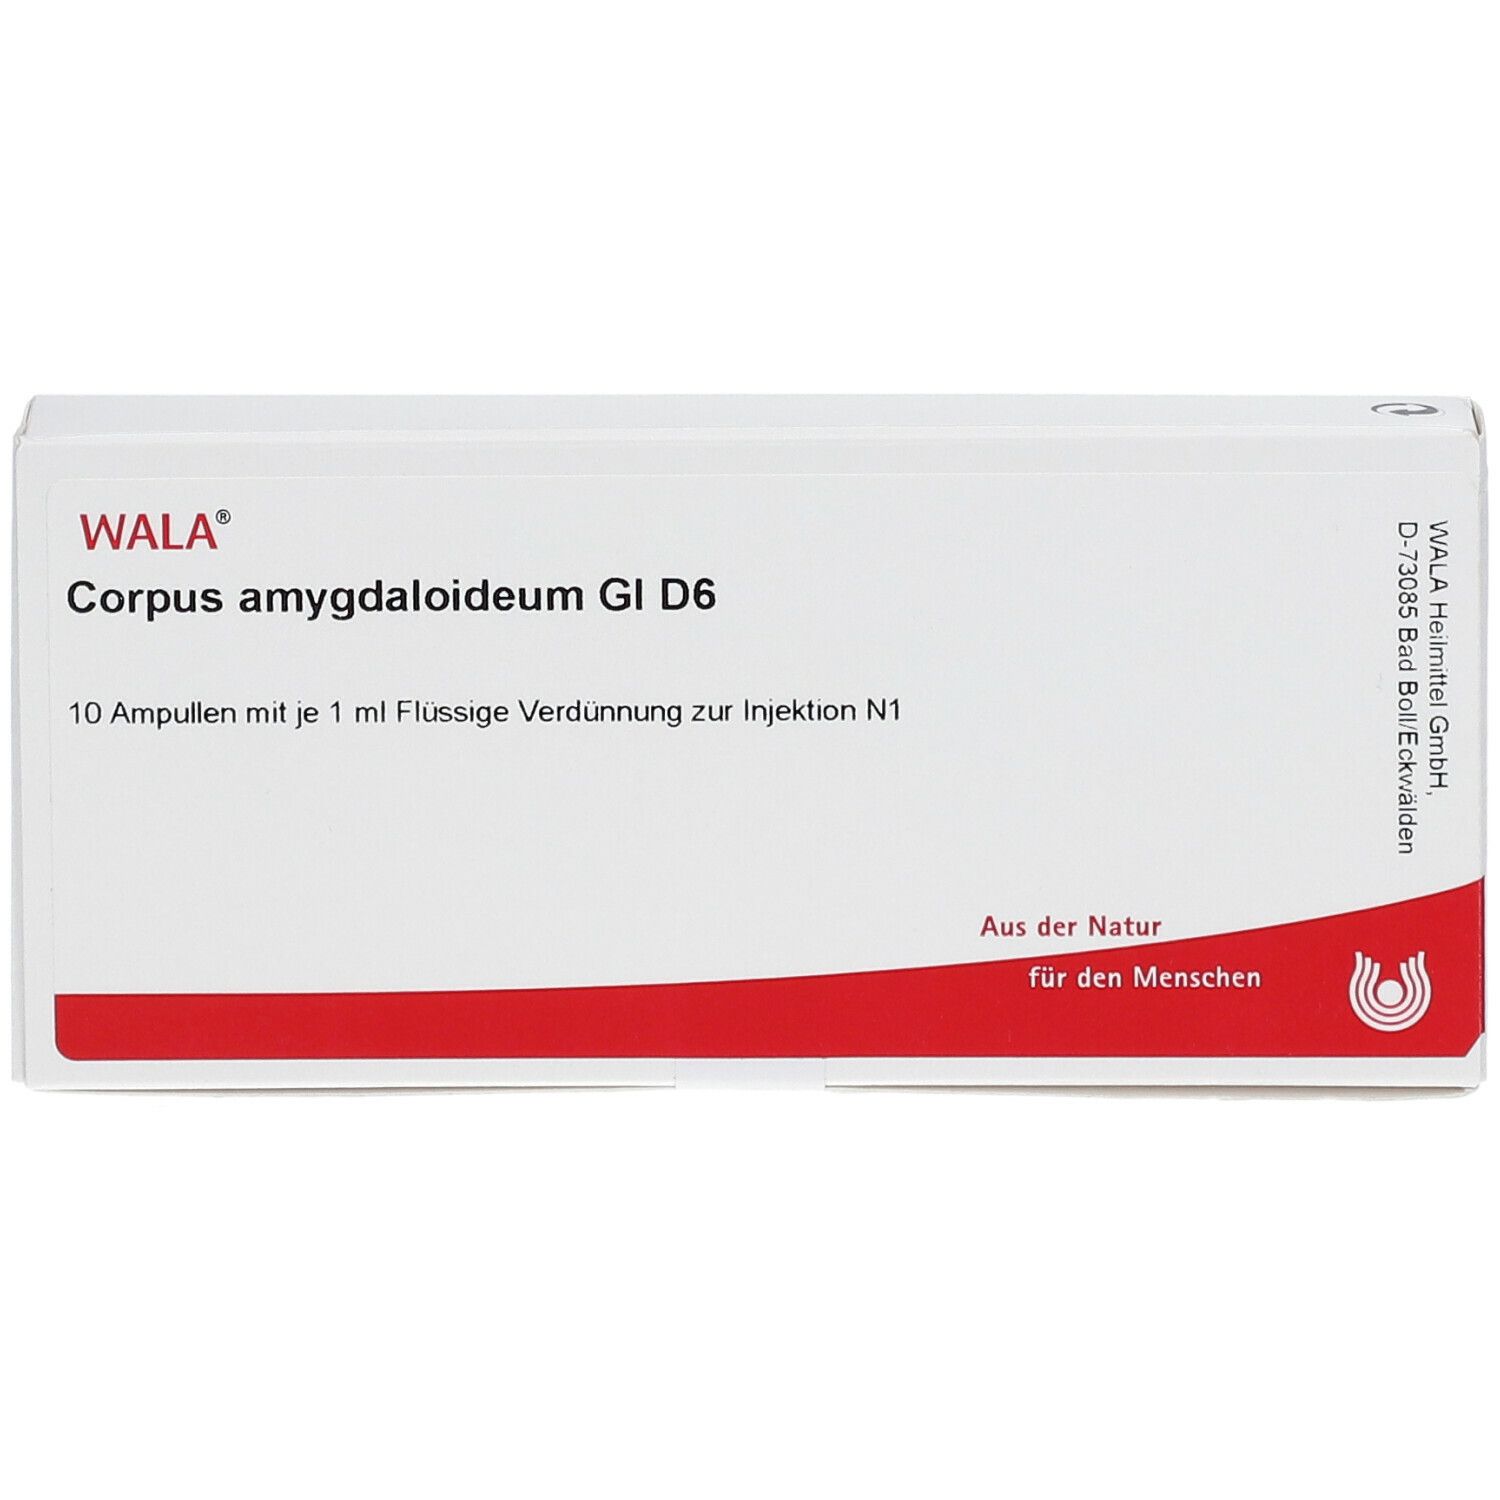 WALA® Corpus amygdaloideum Gl D 6